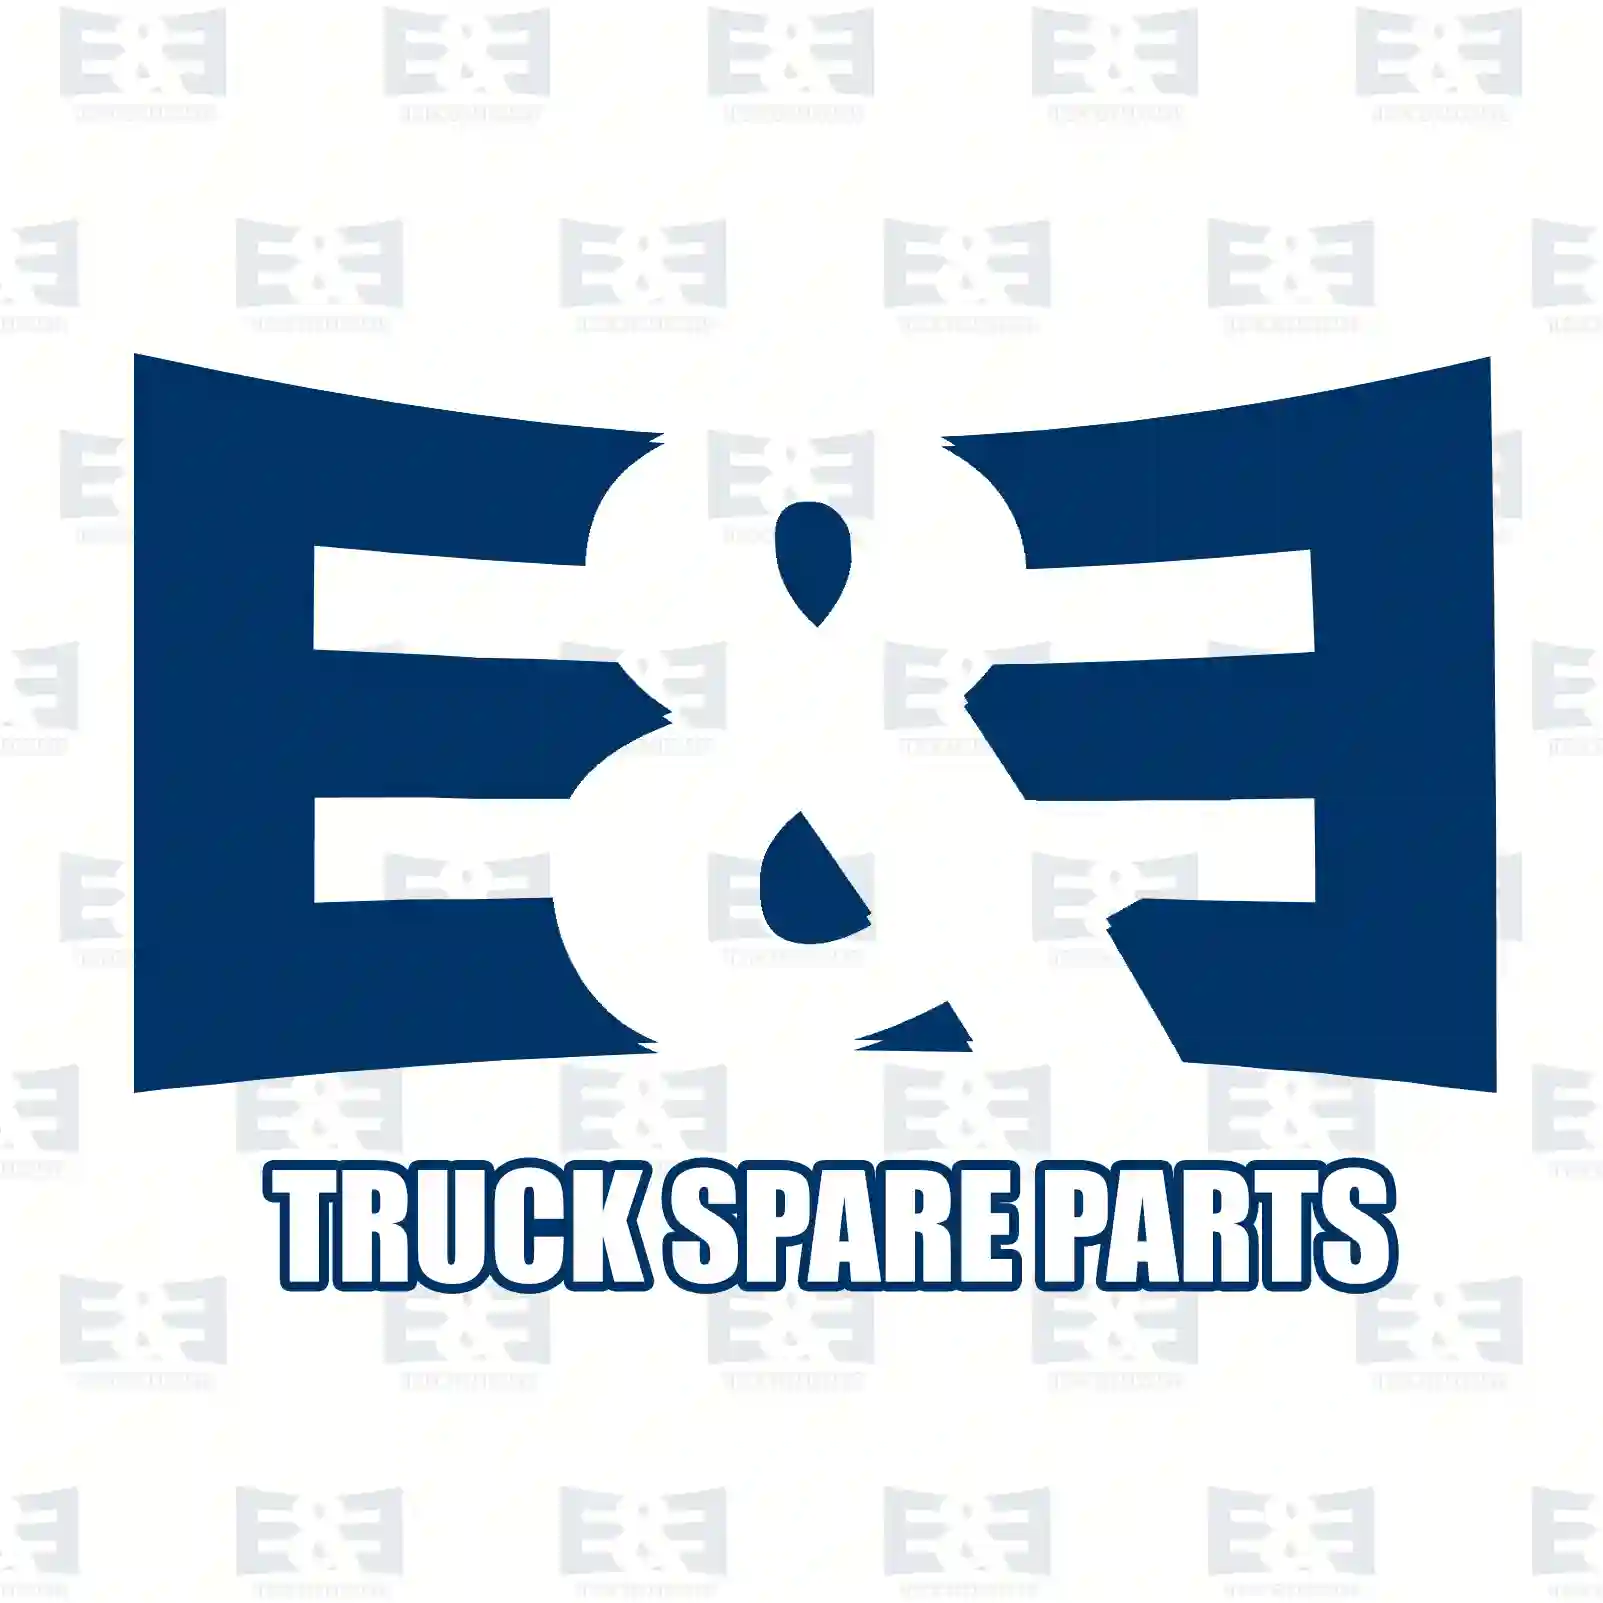 Fan clutch, 2E2201618, 7420547526S1, 20466633S1, 20517745S1, 20805992S1, 20981224S1, 85000097S1, 85000281S1, 85000587S1, 85000738S1 ||  2E2201618 E&E Truck Spare Parts | Truck Spare Parts, Auotomotive Spare Parts Fan clutch, 2E2201618, 7420547526S1, 20466633S1, 20517745S1, 20805992S1, 20981224S1, 85000097S1, 85000281S1, 85000587S1, 85000738S1 ||  2E2201618 E&E Truck Spare Parts | Truck Spare Parts, Auotomotive Spare Parts